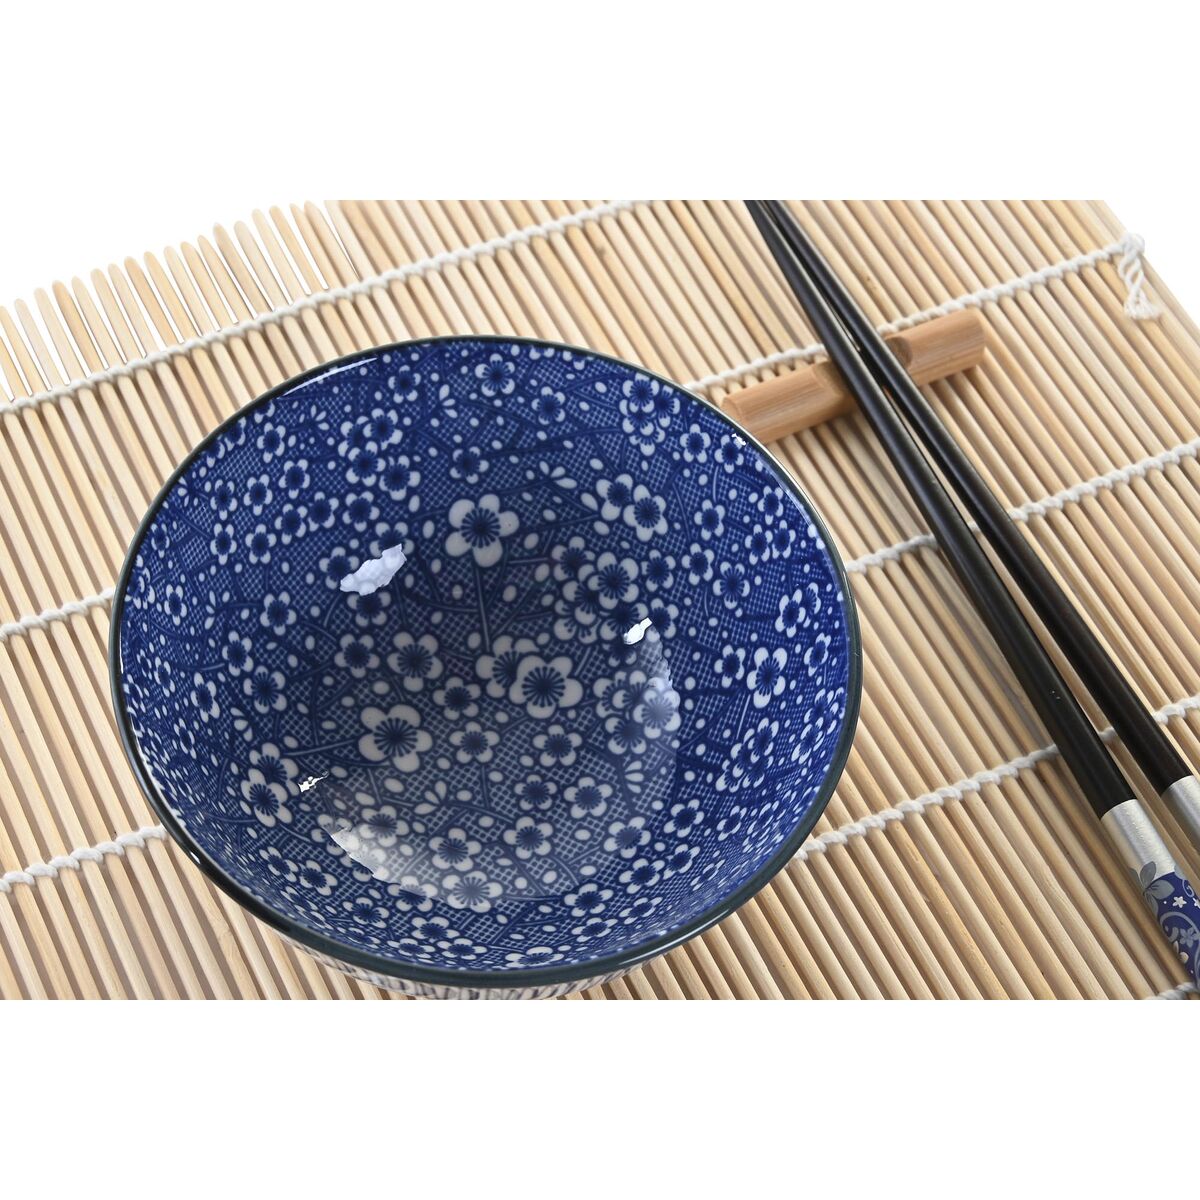 WORKSHOP CERÁMICA crea tu set de sushi – Consell 81 – Clases de cerámica